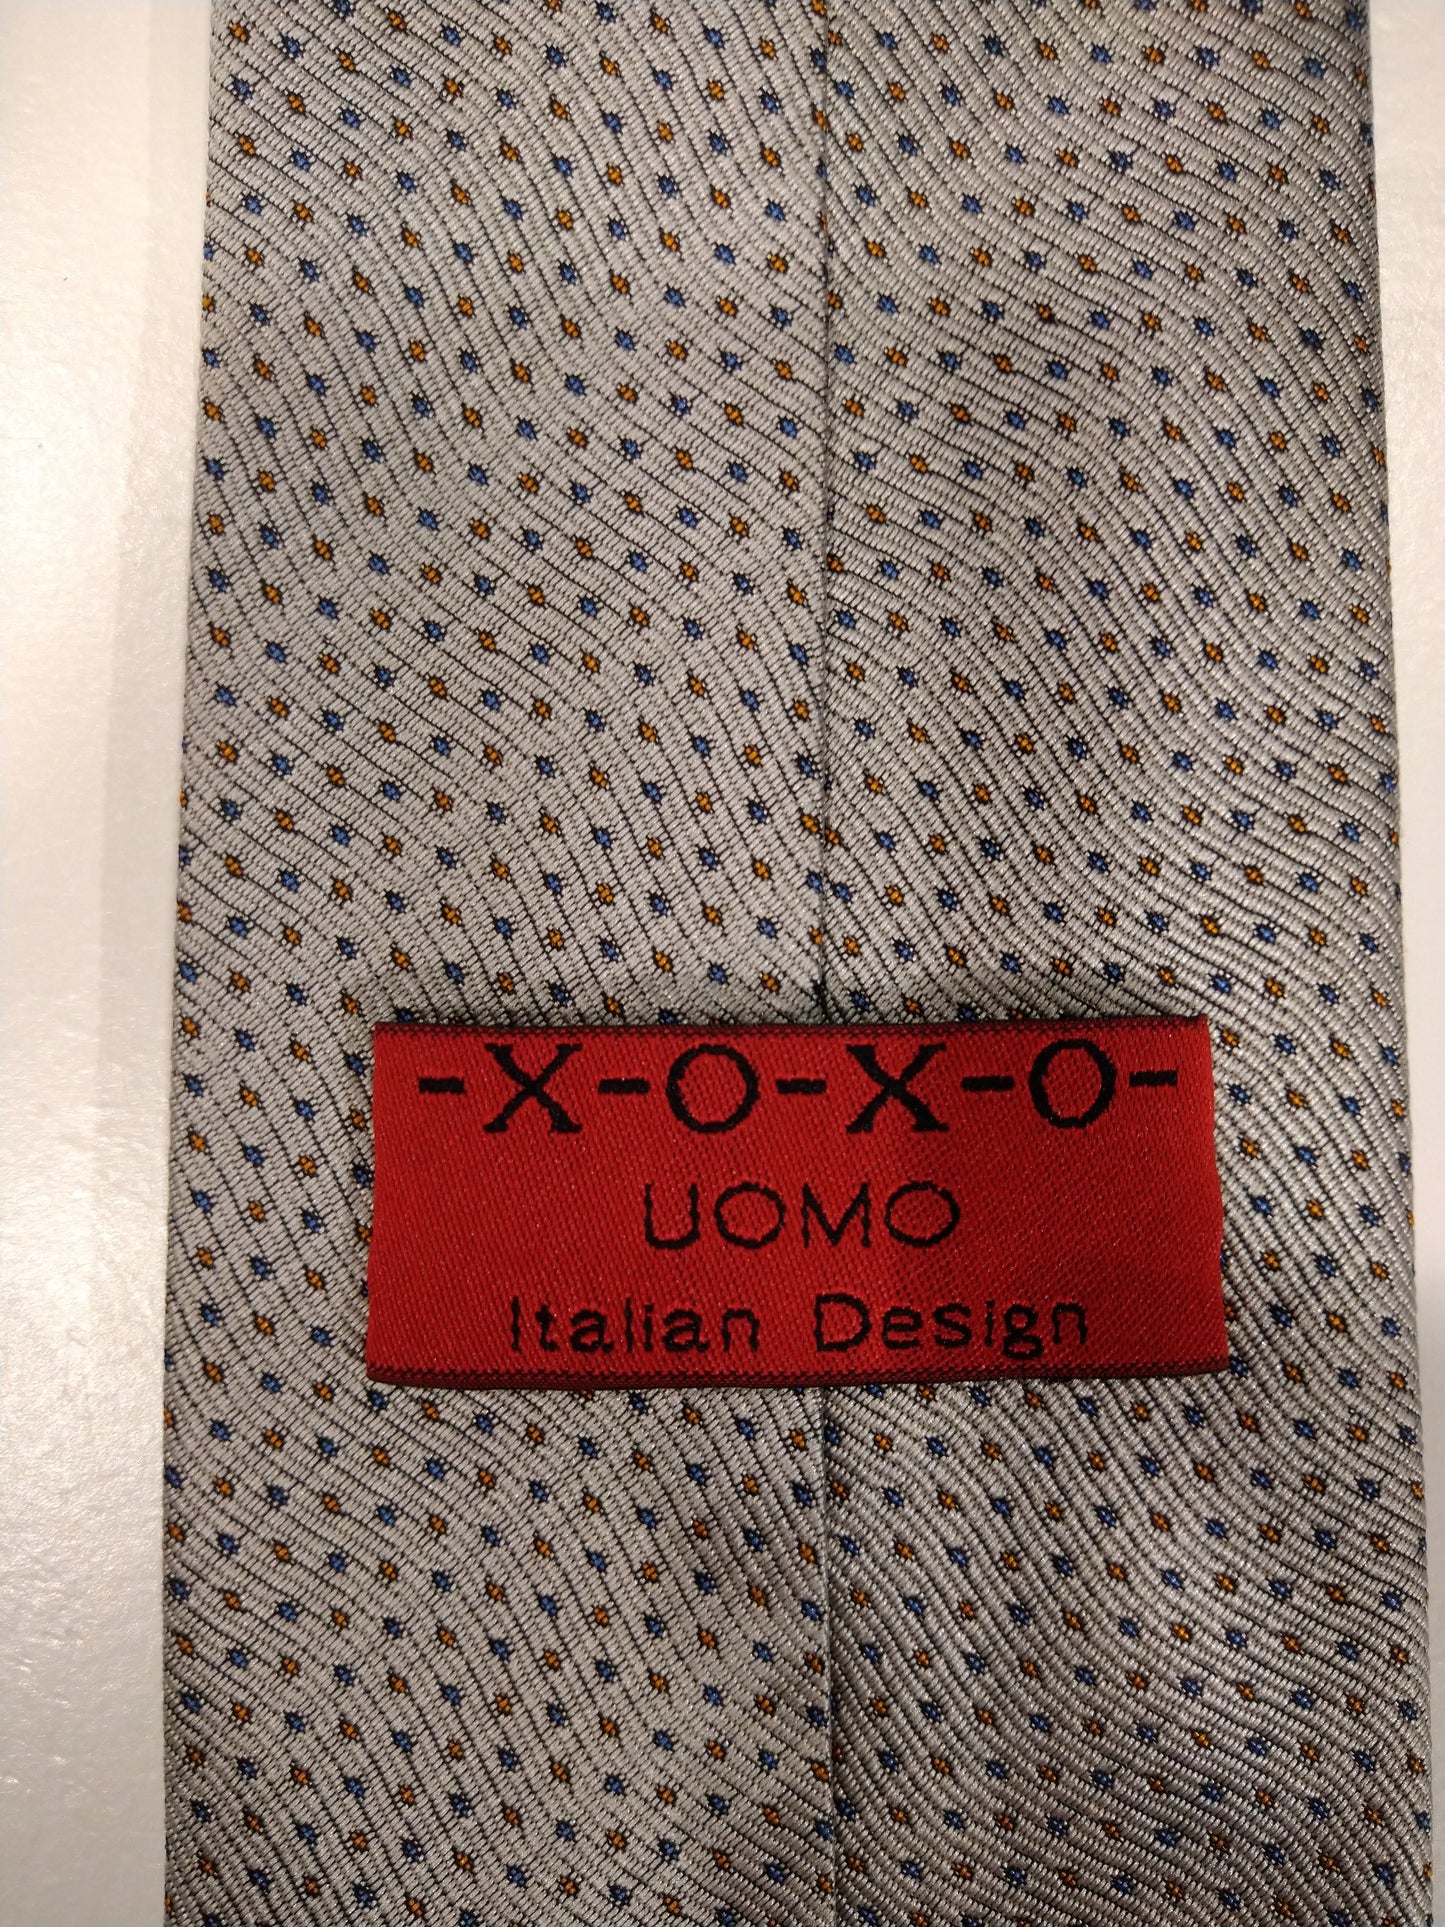 X-O-X-O UOMO TIE DE DESEJO ITALIANO. Beige con motivos azules / marrones.